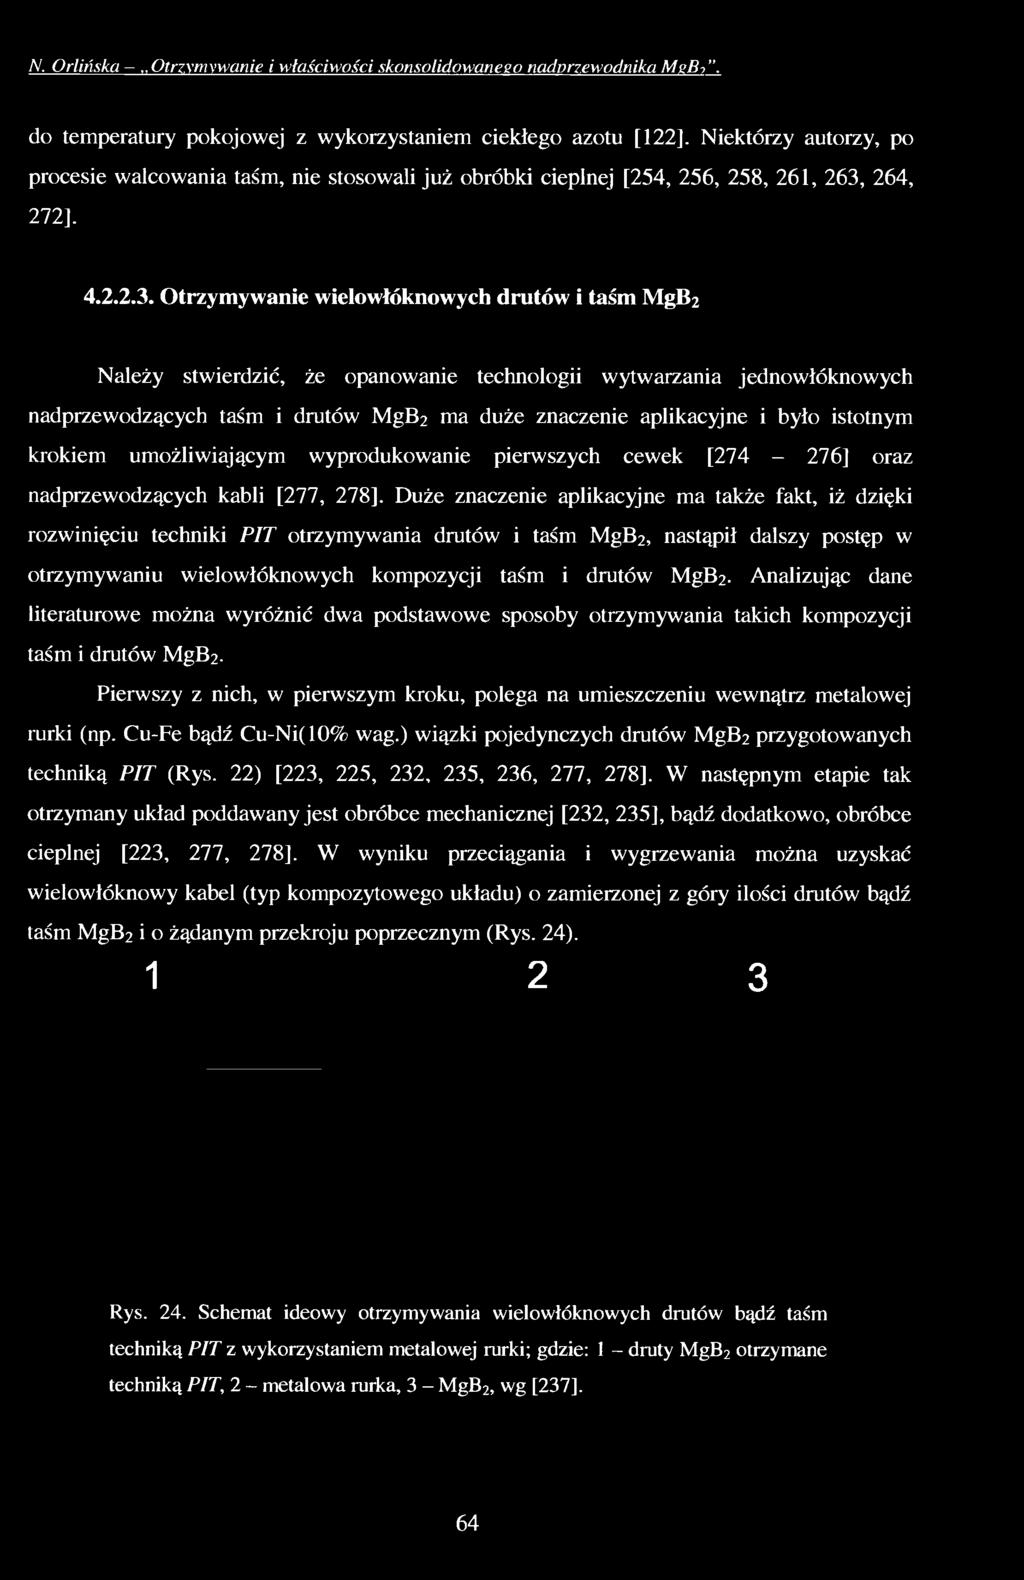 N. Orlińska..Otrzymywanie i właściwości skonsolidowanego nadprzewodnika M ebi. do temperatury pokojowej z wykorzystaniem ciekłego azotu [122].